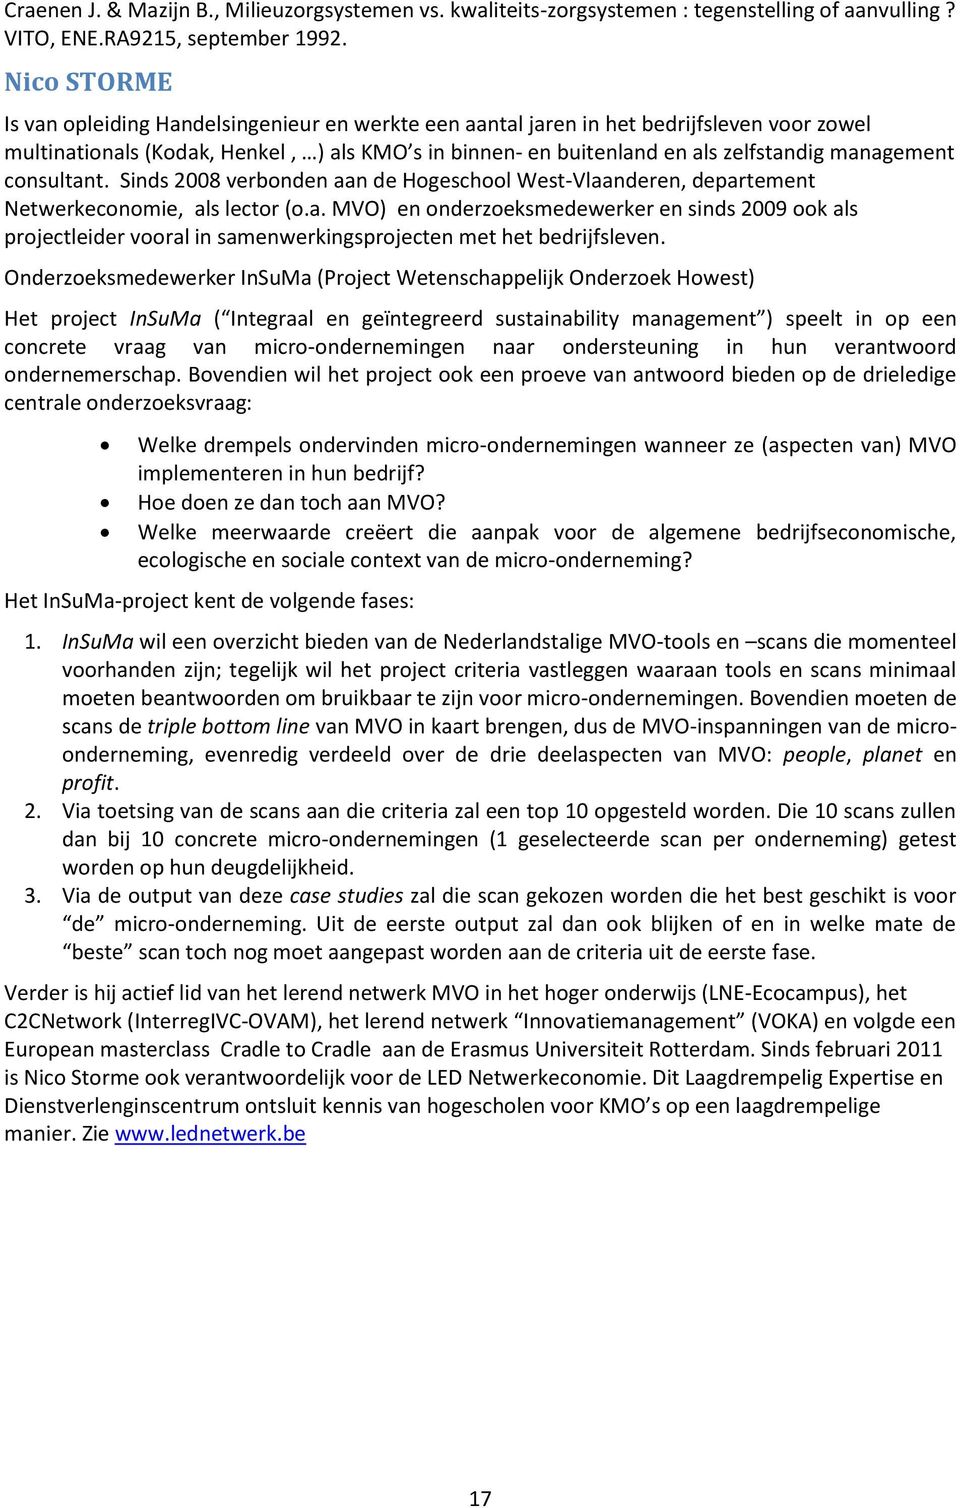 cnsultant. Sinds 2008 verbnden aan de Hgeschl West-Vlaanderen, departement Netwerkecnmie, als lectr (.a. MVO) en nderzeksmedewerker en sinds 2009 k als prjectleider vral in samenwerkingsprjecten met het bedrijfsleven.